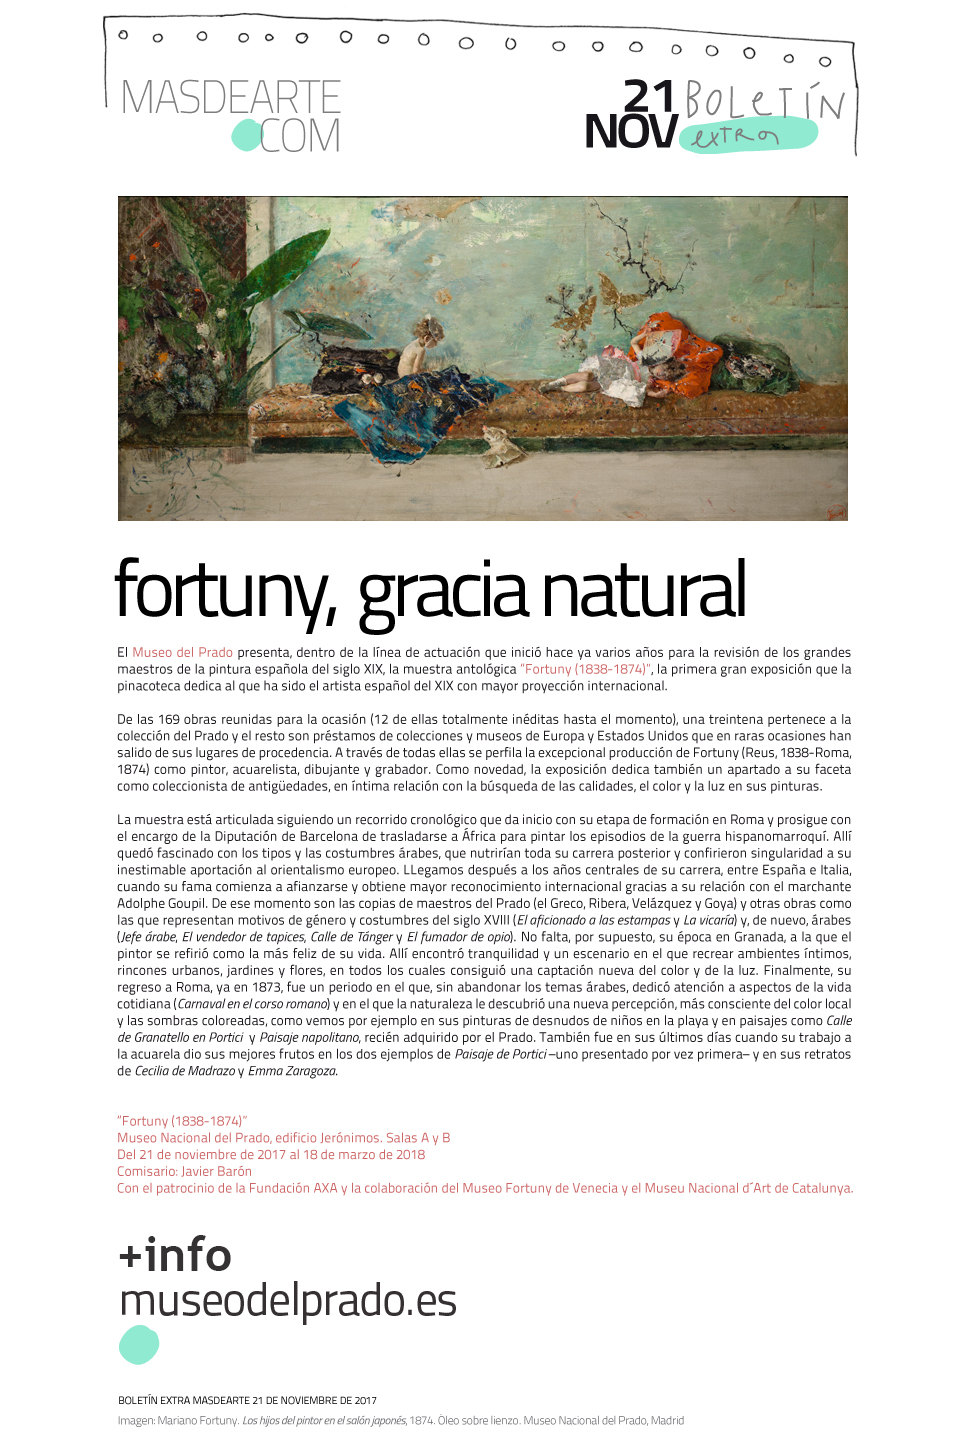 Extra masdearte: el Museo del Prado inaugura una gran exposición dedicada a Fortuny. Has el 18 de marzo de 2018